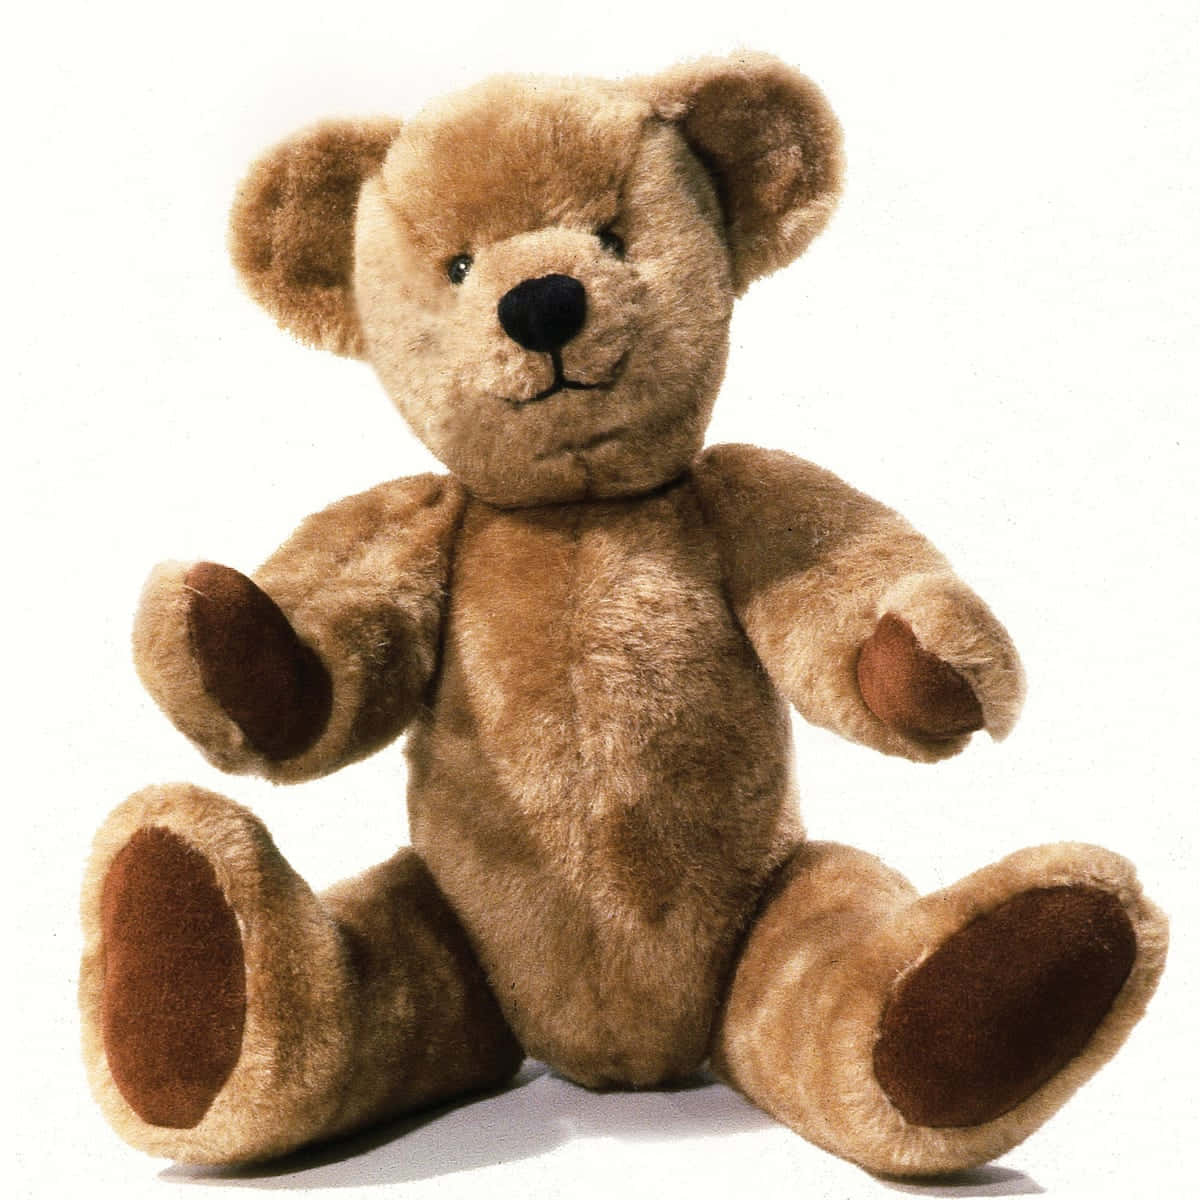 Sweet Hug From a Teddy Bear